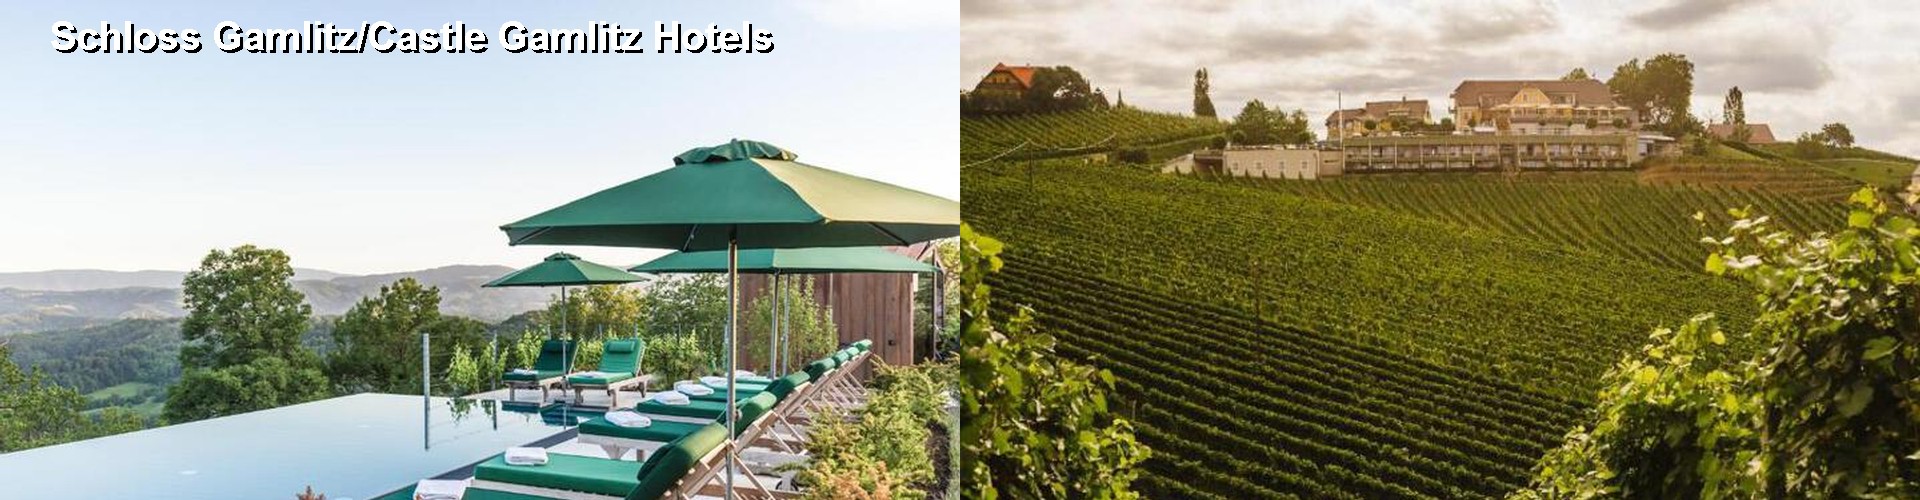 5 Best Hotels near Schloss Gamlitz/Castle Gamlitz